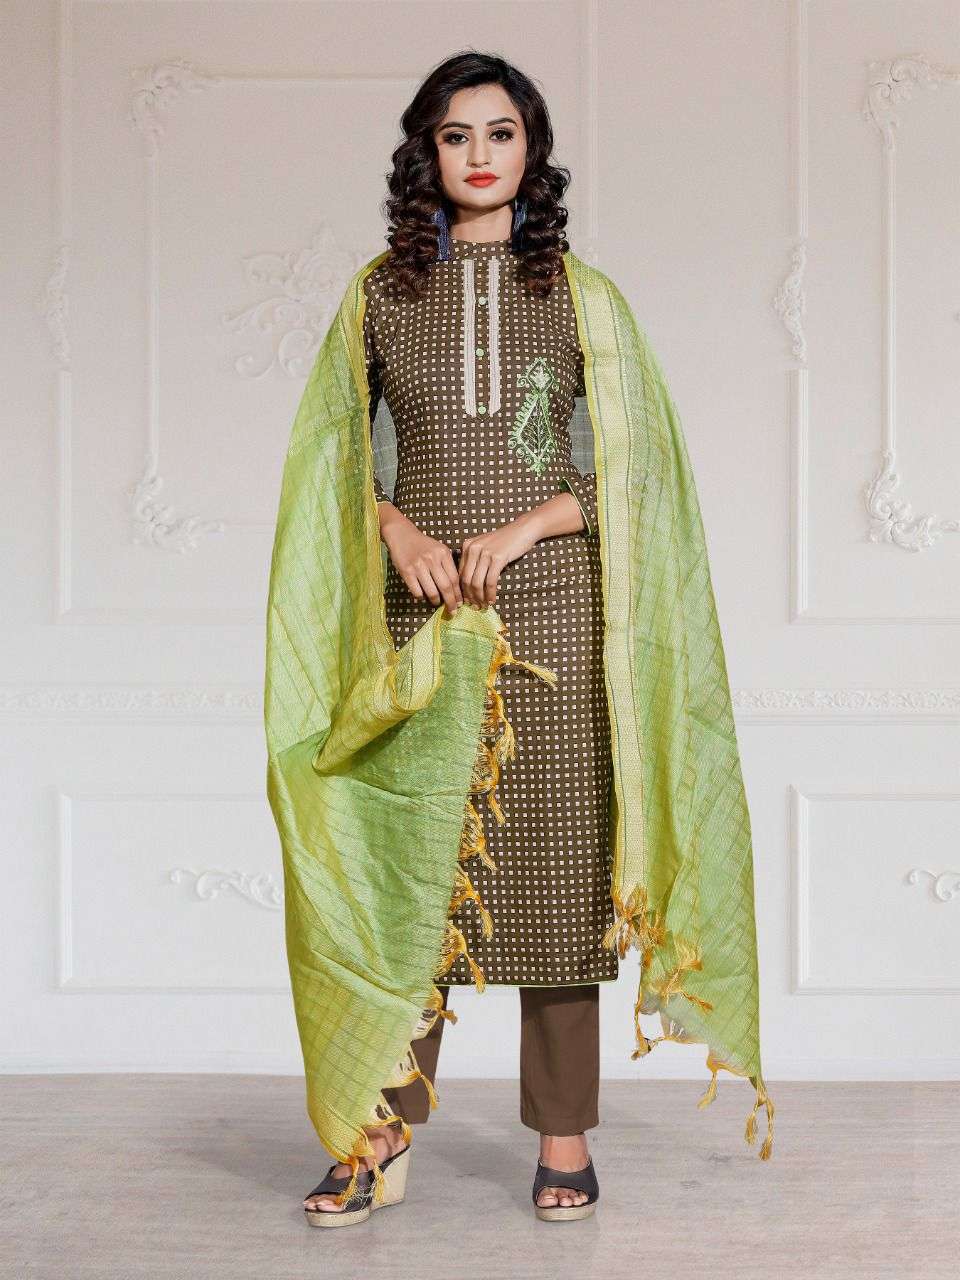 bipsons prints piya 1243 series stylish designer-salwar kameez wholesale price